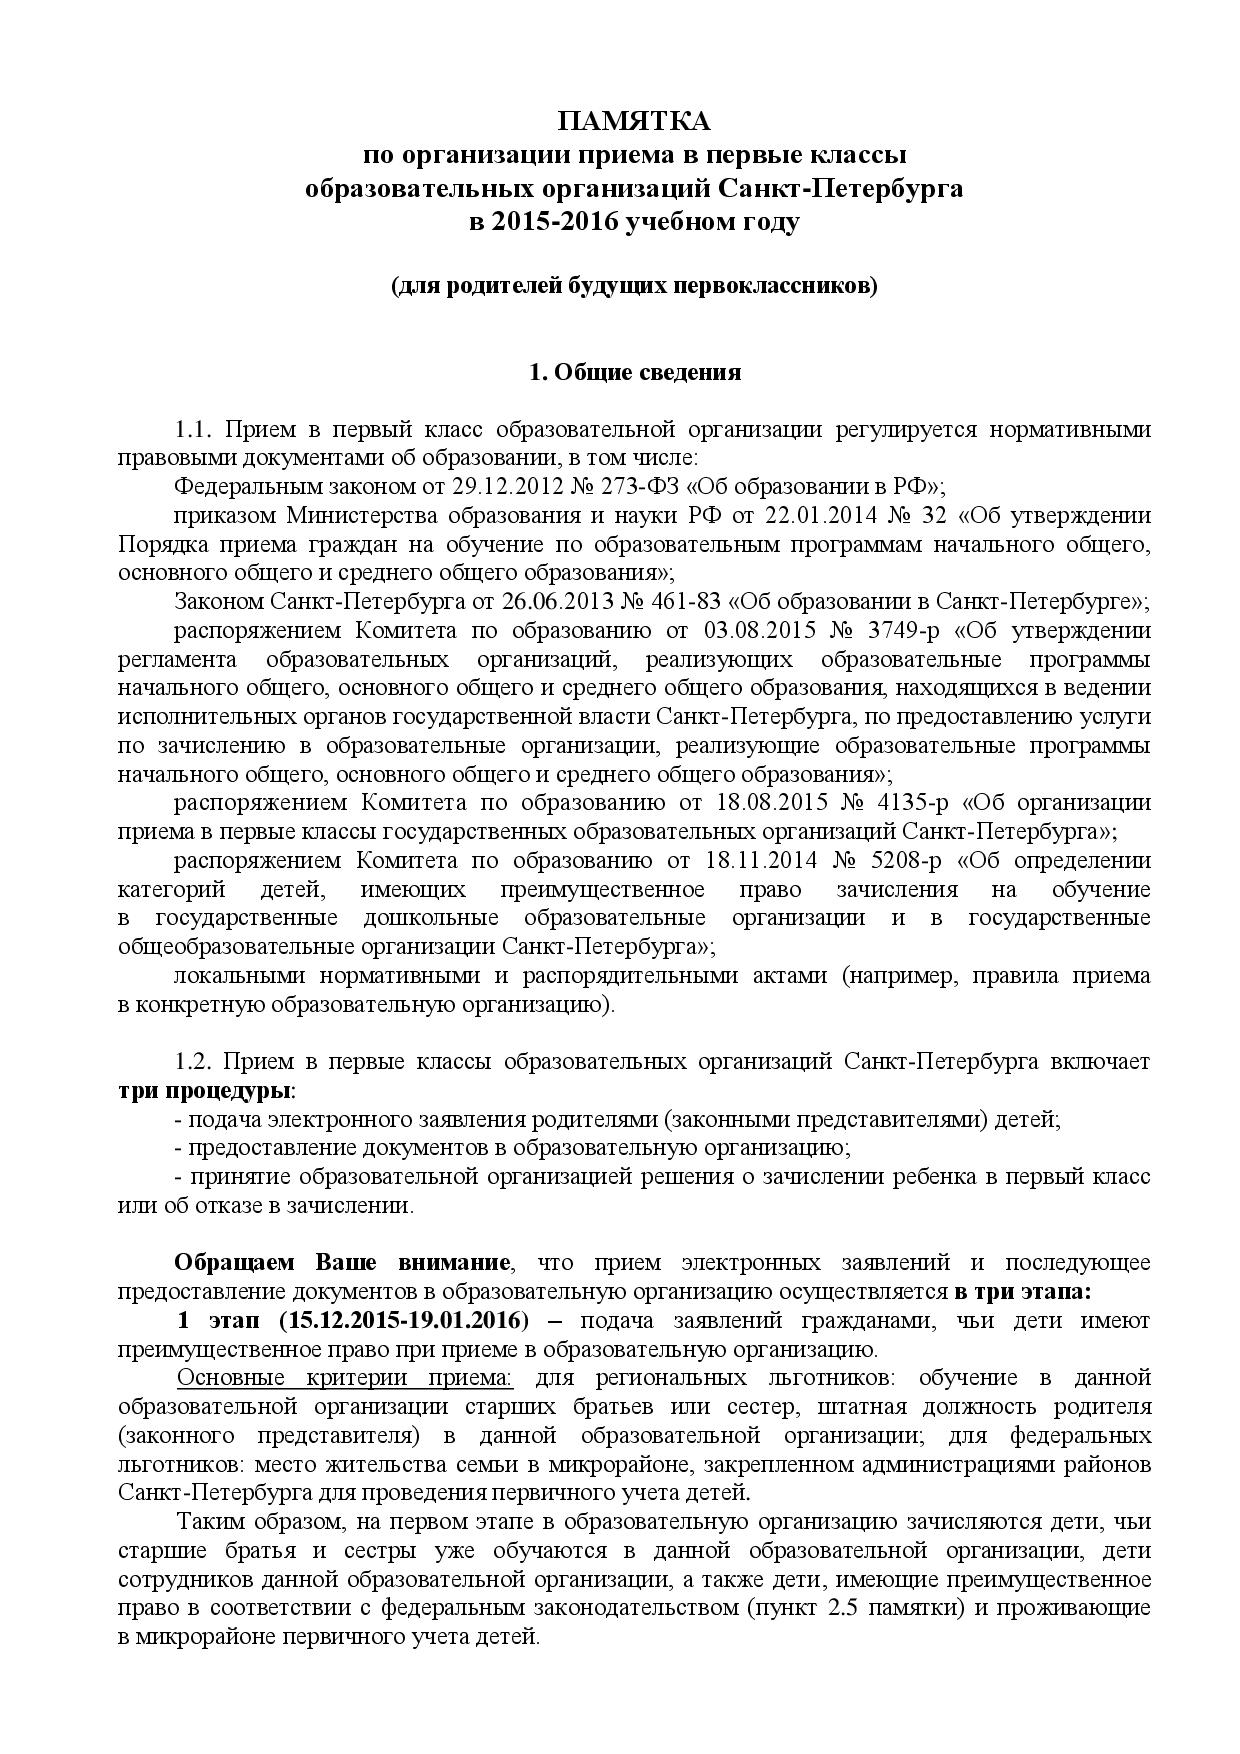 ПАМЯТКА  по организации приема в первые классы образовательных организаций Санкт-Петербурга  в 2015-2016 учебном году